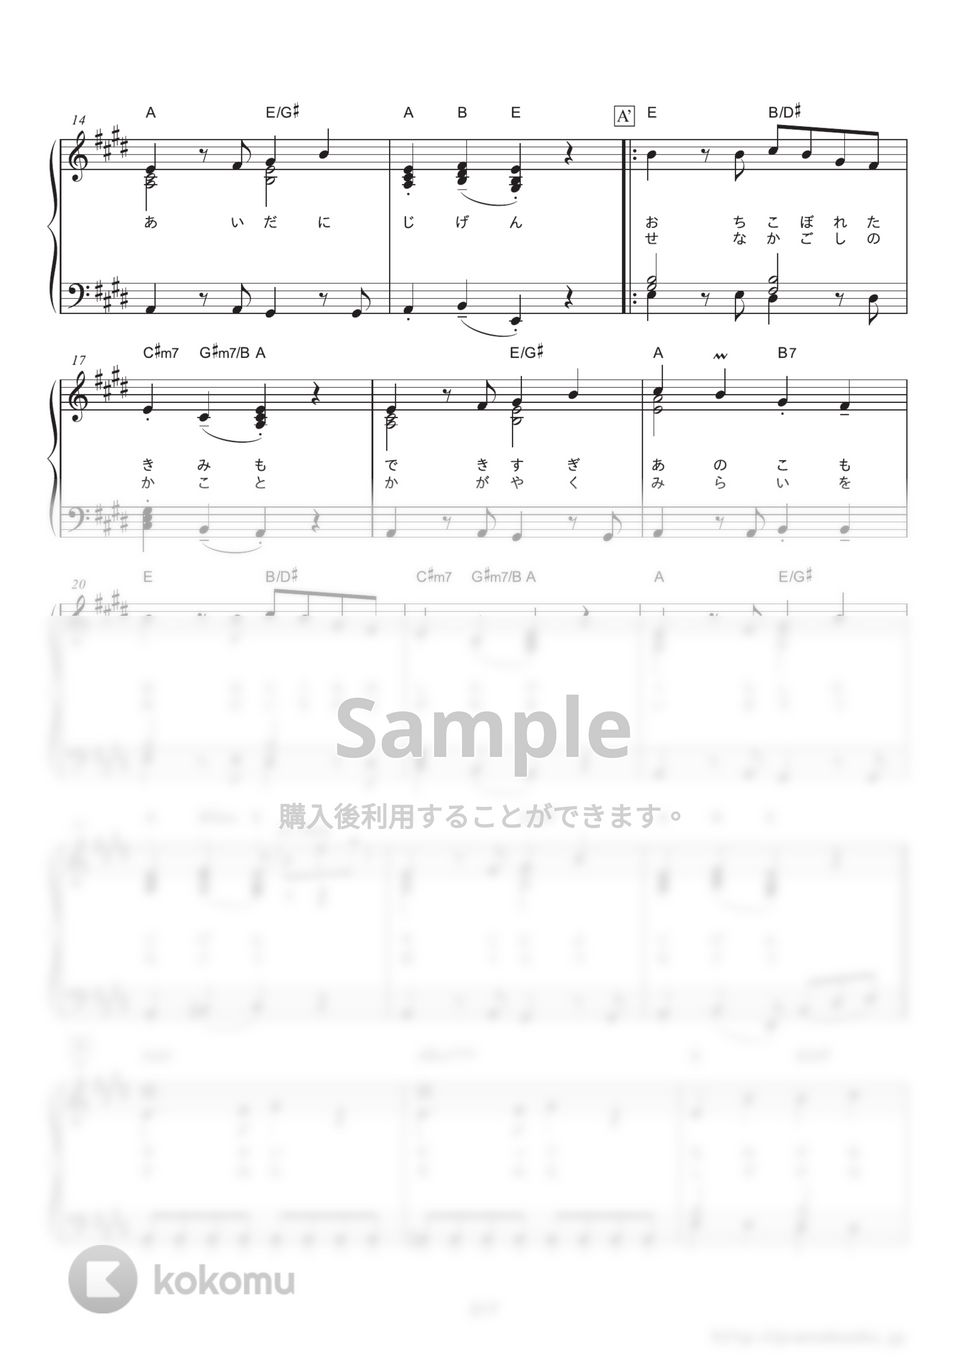 星野源 - ドラえもん (映画『ドラえもん のび太の宝島』主題歌) by ピアノの本棚